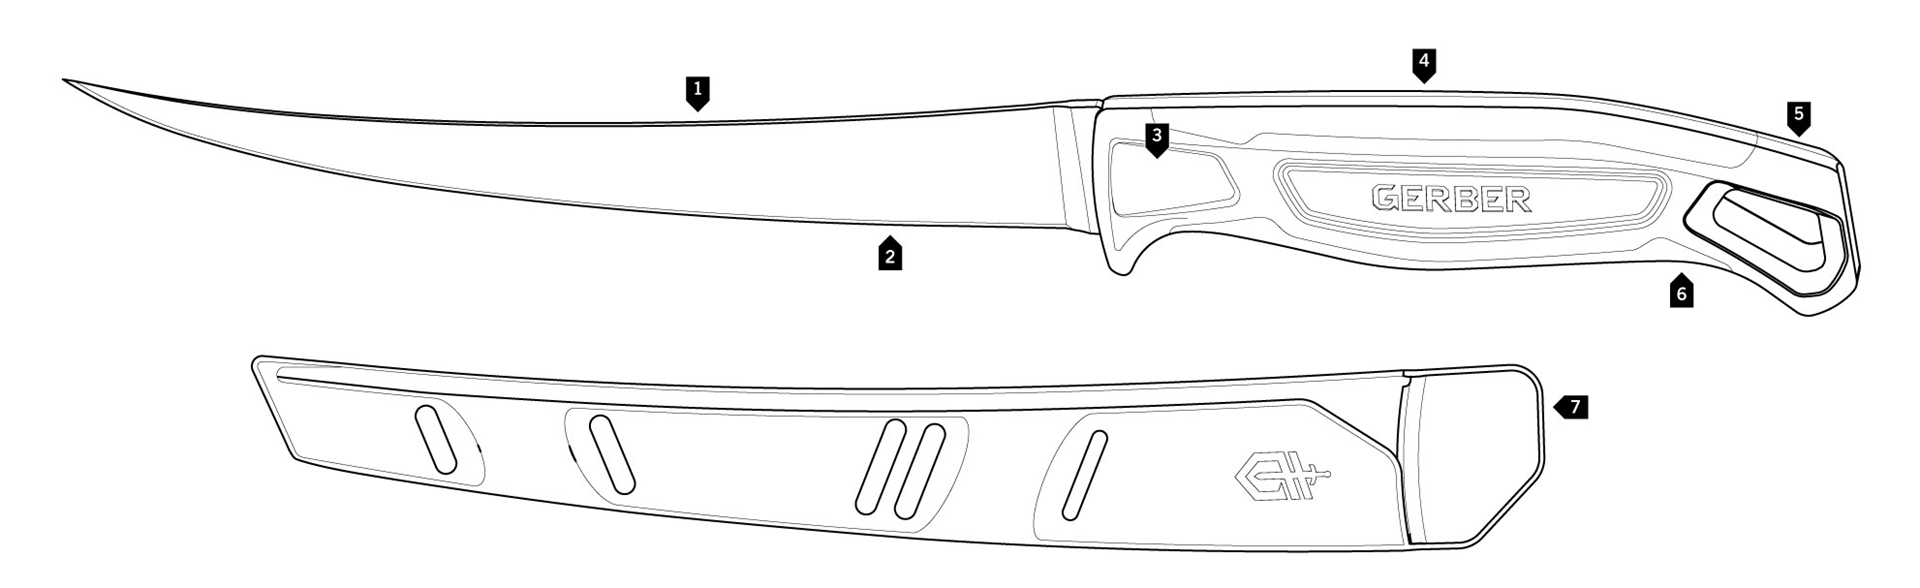 Filetovací nůž Ceviche, Gerber, 7''